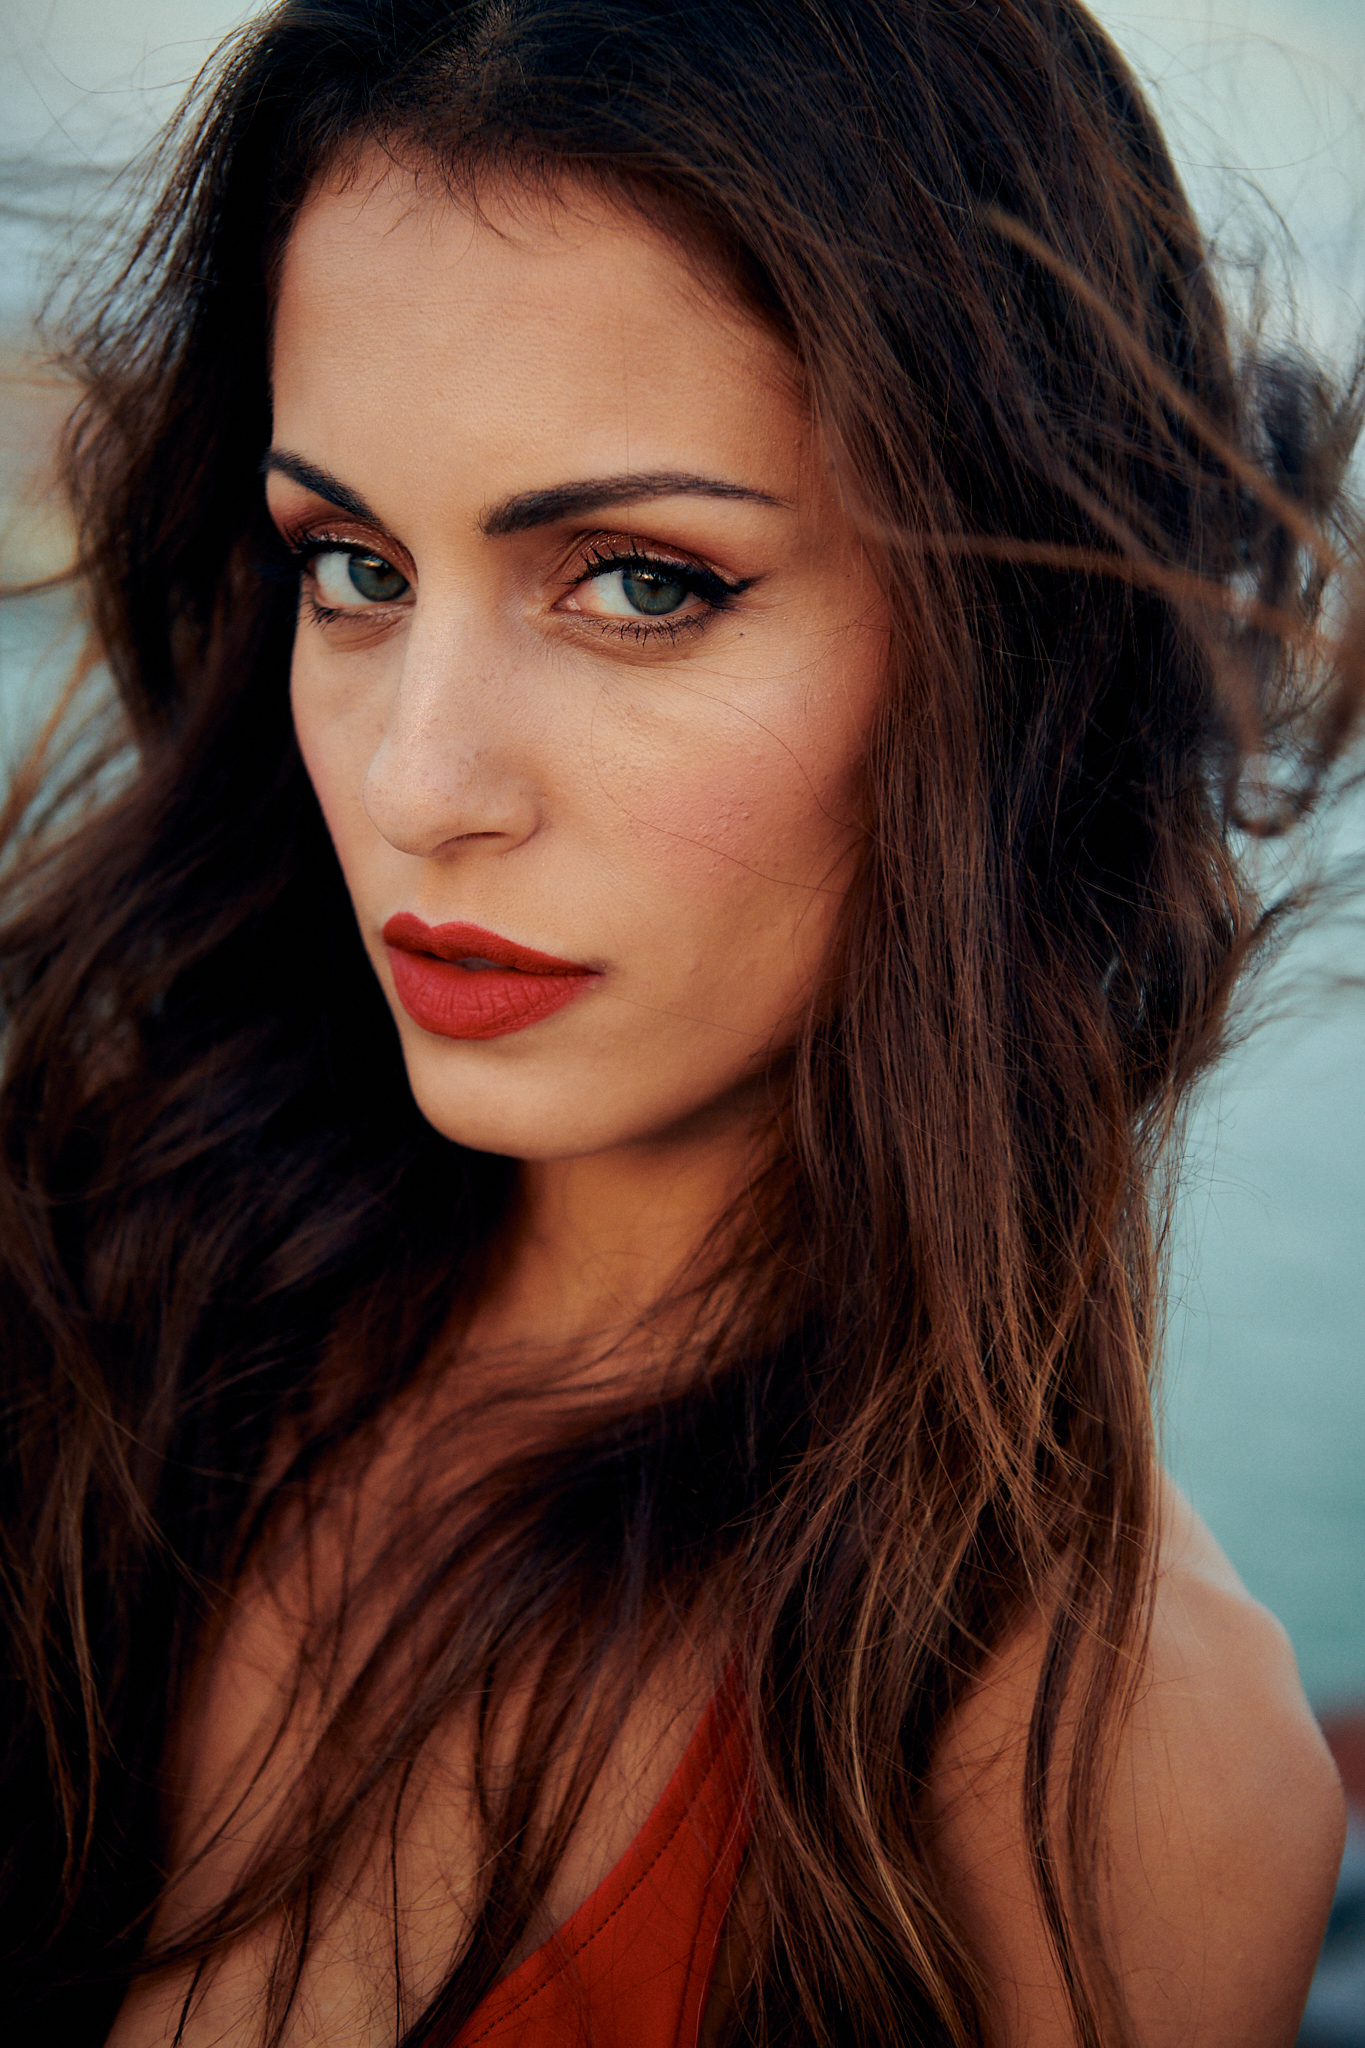 Entre las claves del look de maquillaje de Hiba Abouk destacan su eyeliner alado, sus labios rojos mate y sus párpados y piel luminosa.